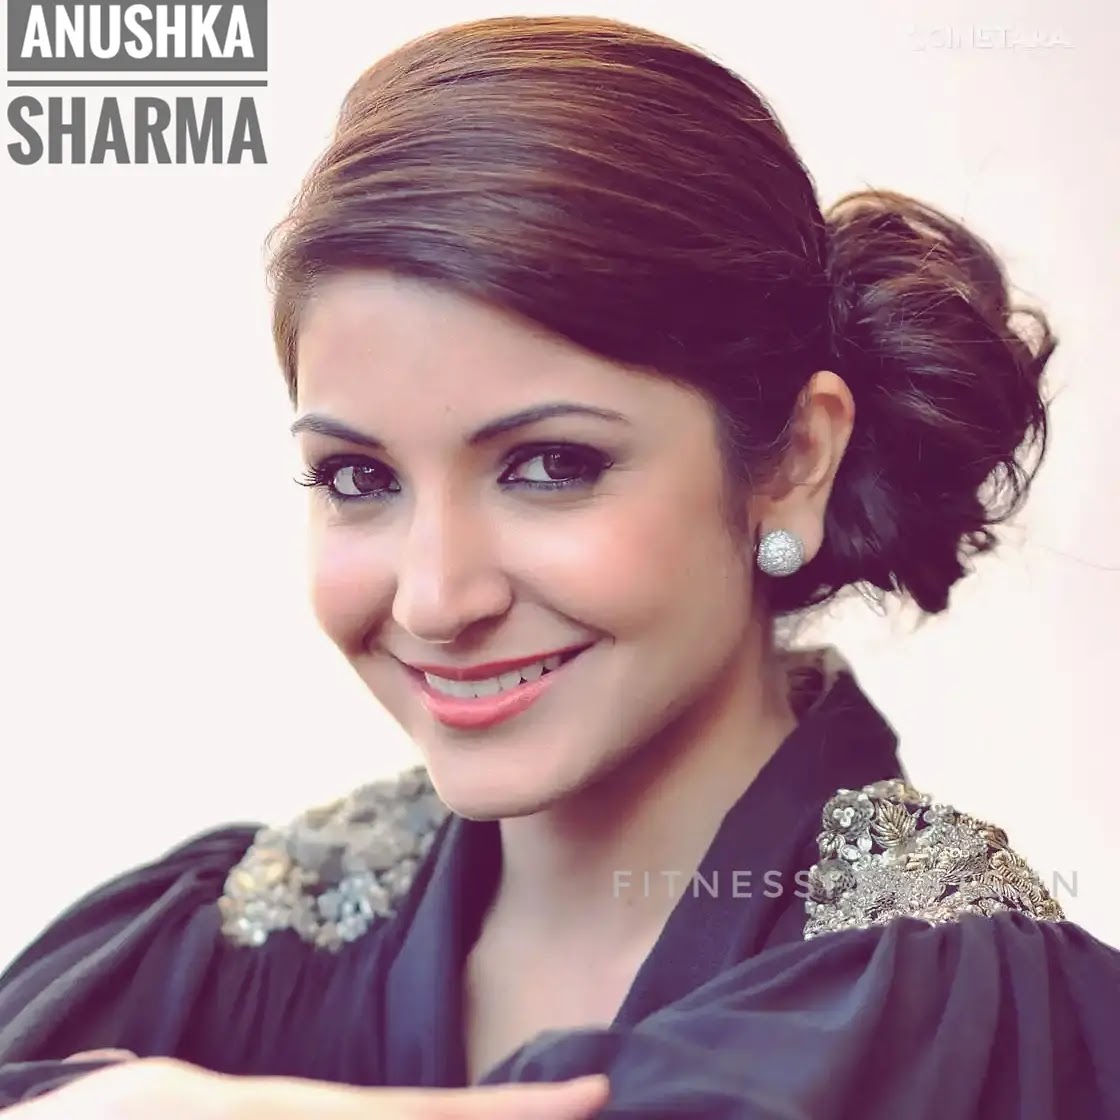 Anushka Sharma Indian famous vegetarian actress